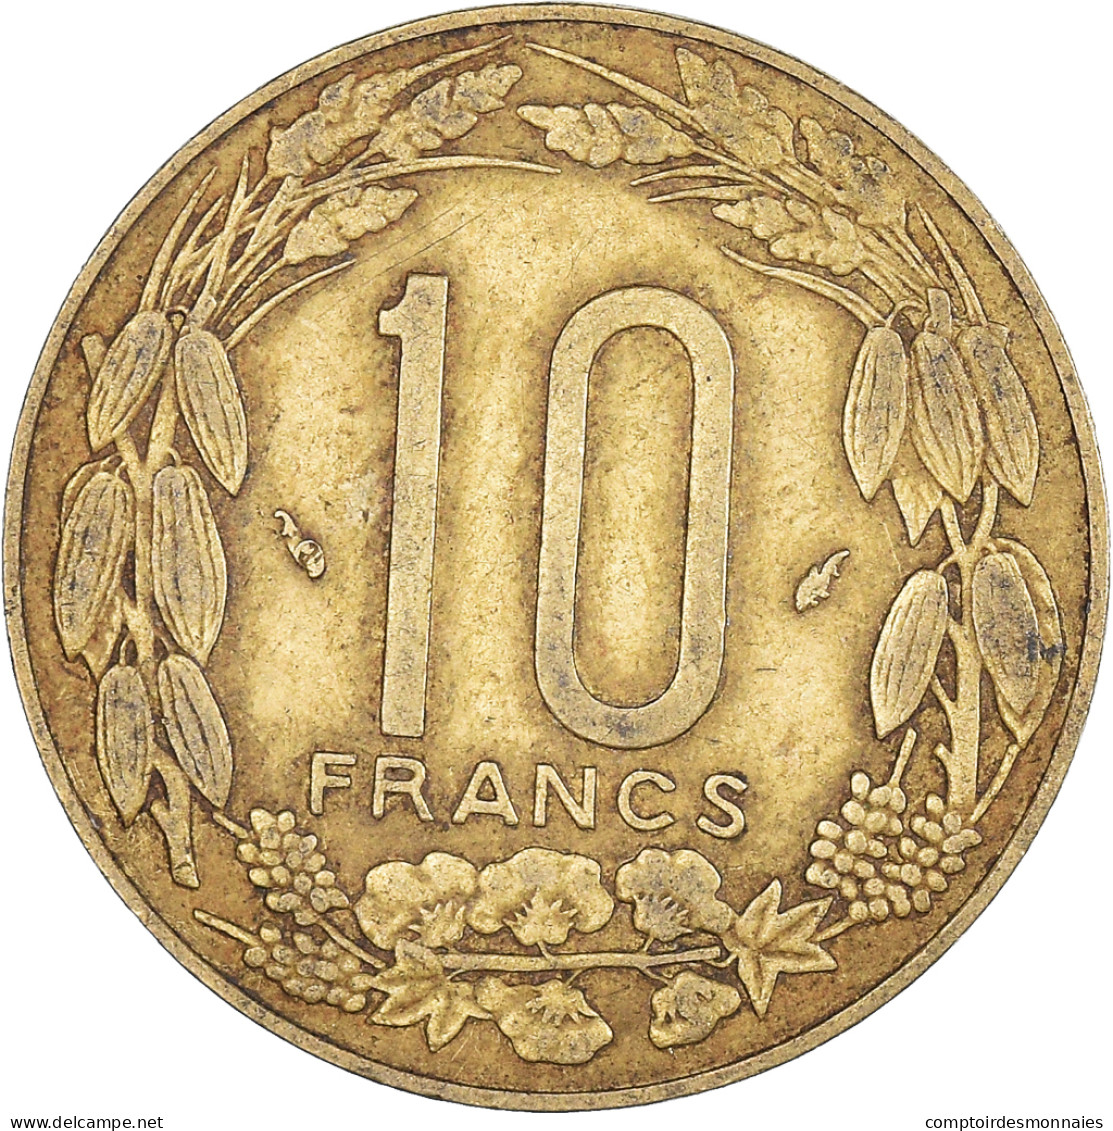 Monnaie, États De L'Afrique Centrale, 10 Francs, 1983 - Repubblica Centroafricana